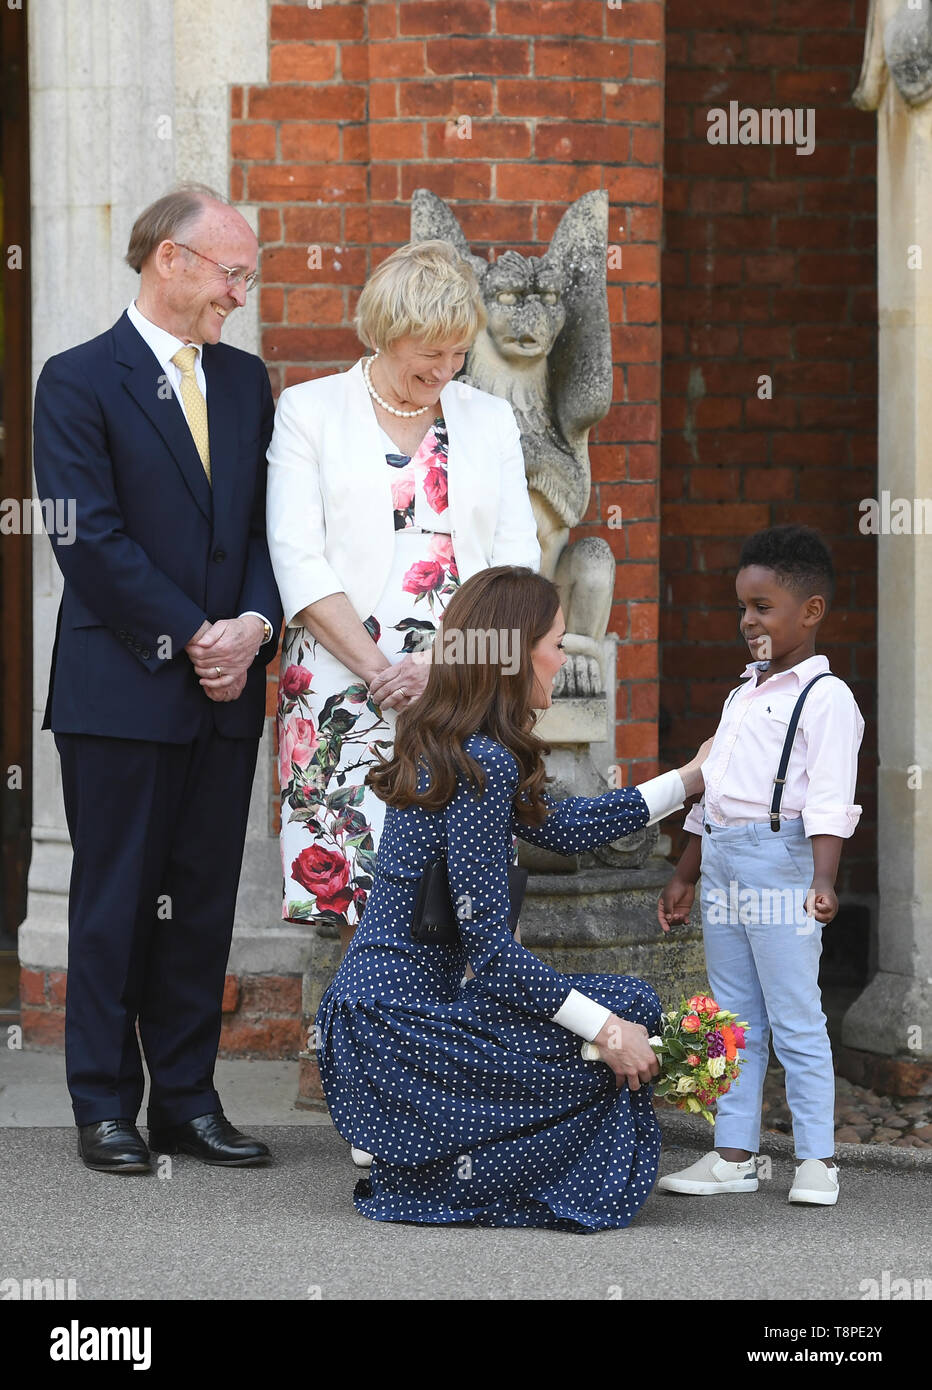 La duchesse de Cambridge rencontre les jeunes Lawson Bischoff après une visite à Bletchley Park pour voir une exposition spéciale D-Day dans le bâtiment nouvellement restauré de téléscripteur. Banque D'Images